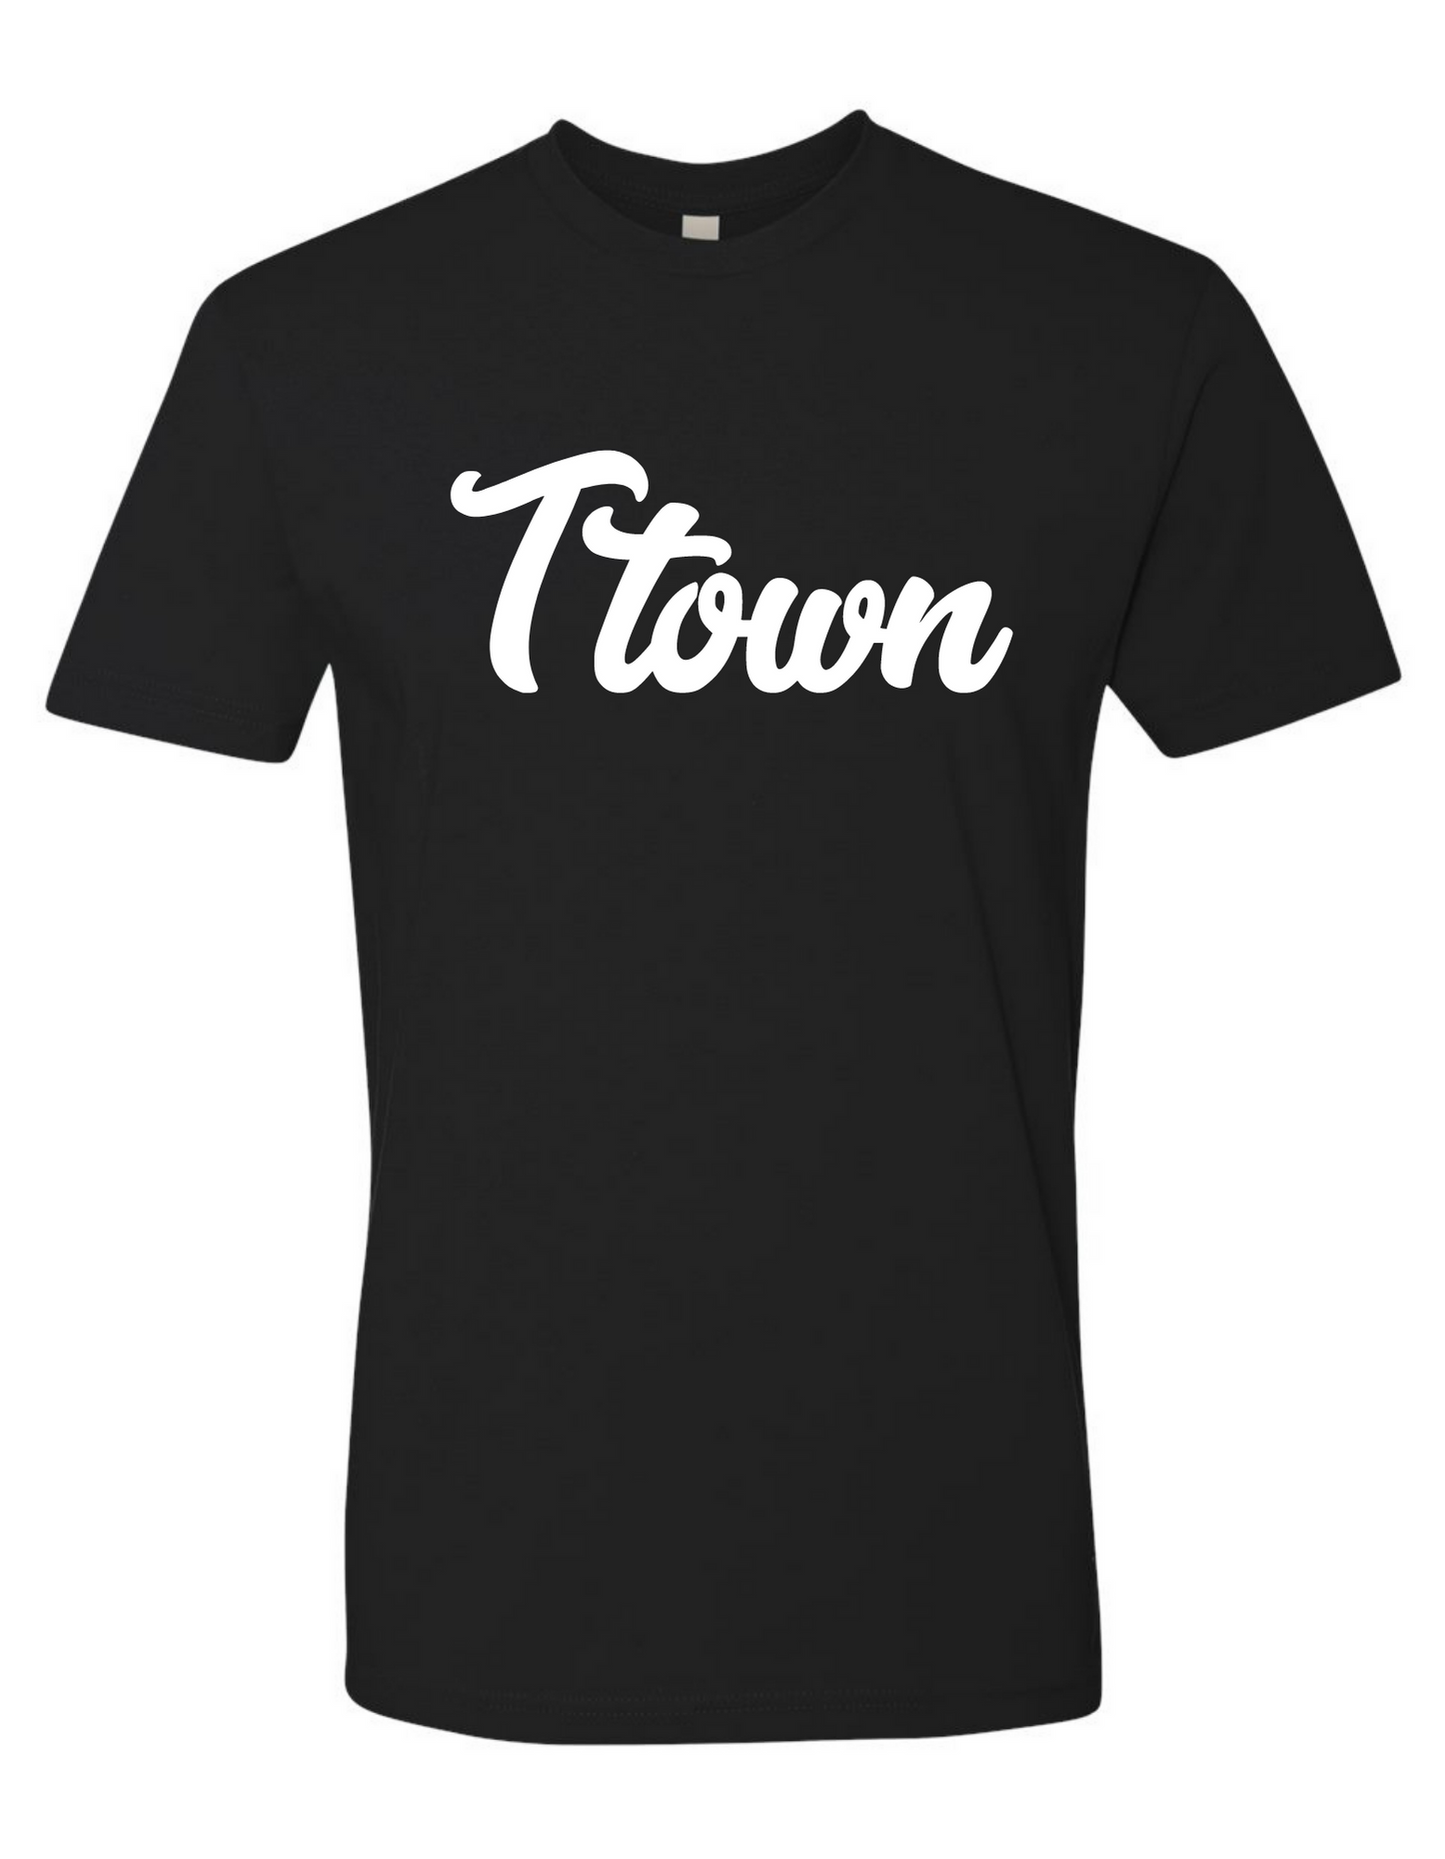 Ttown - Tazewell Hometown Shirt